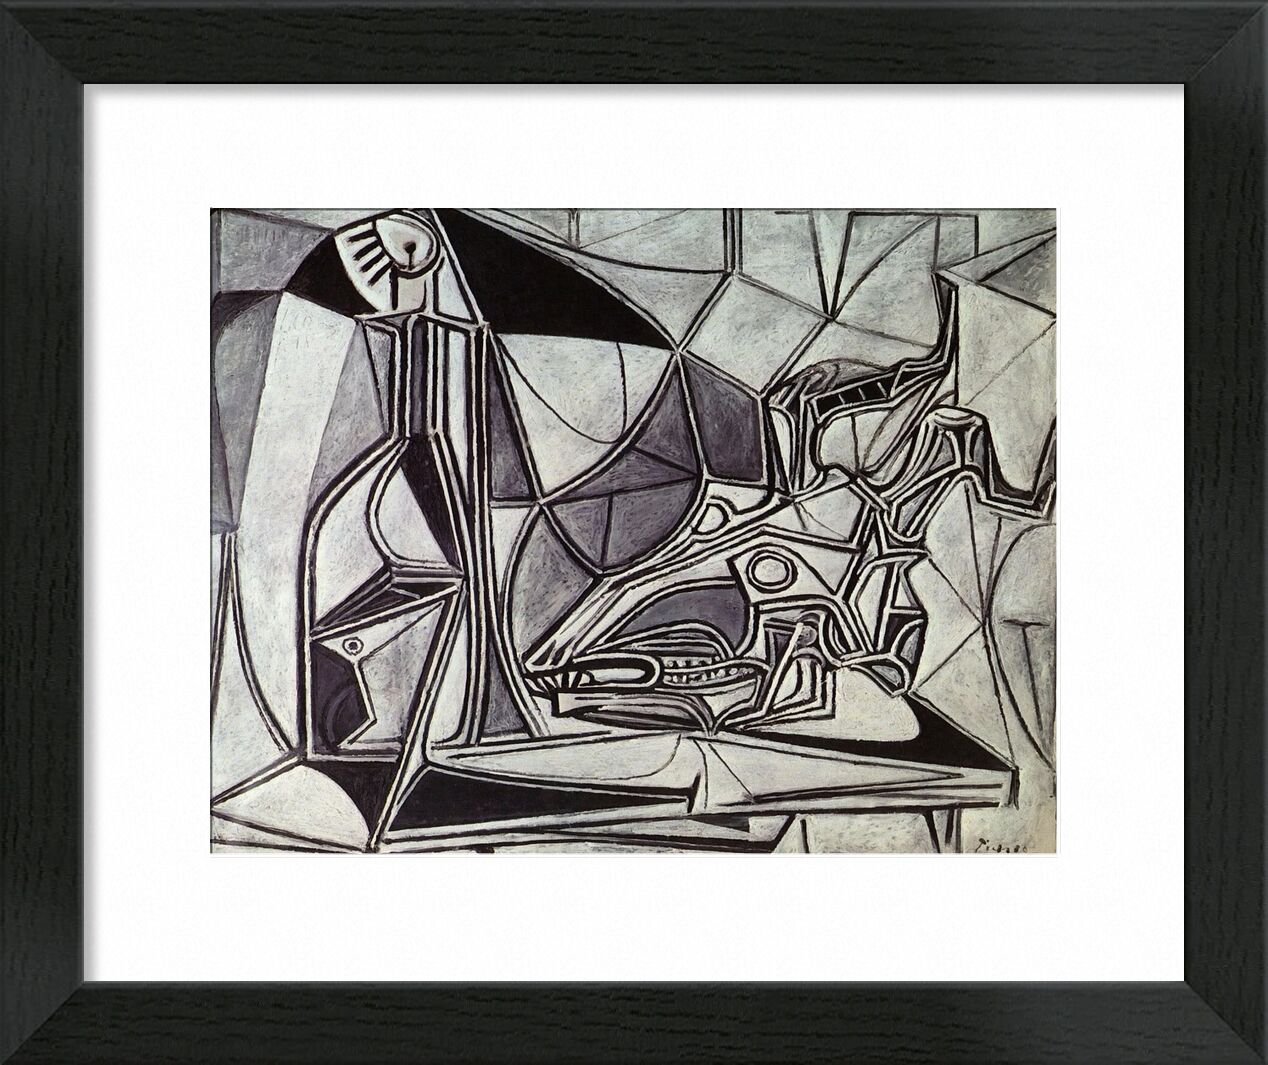 Goat's Skull, Bottle and Candle - Picasso von Bildende Kunst, Prodi Art, Picasso, Malerei, abstrakt, Ziege, Kerze